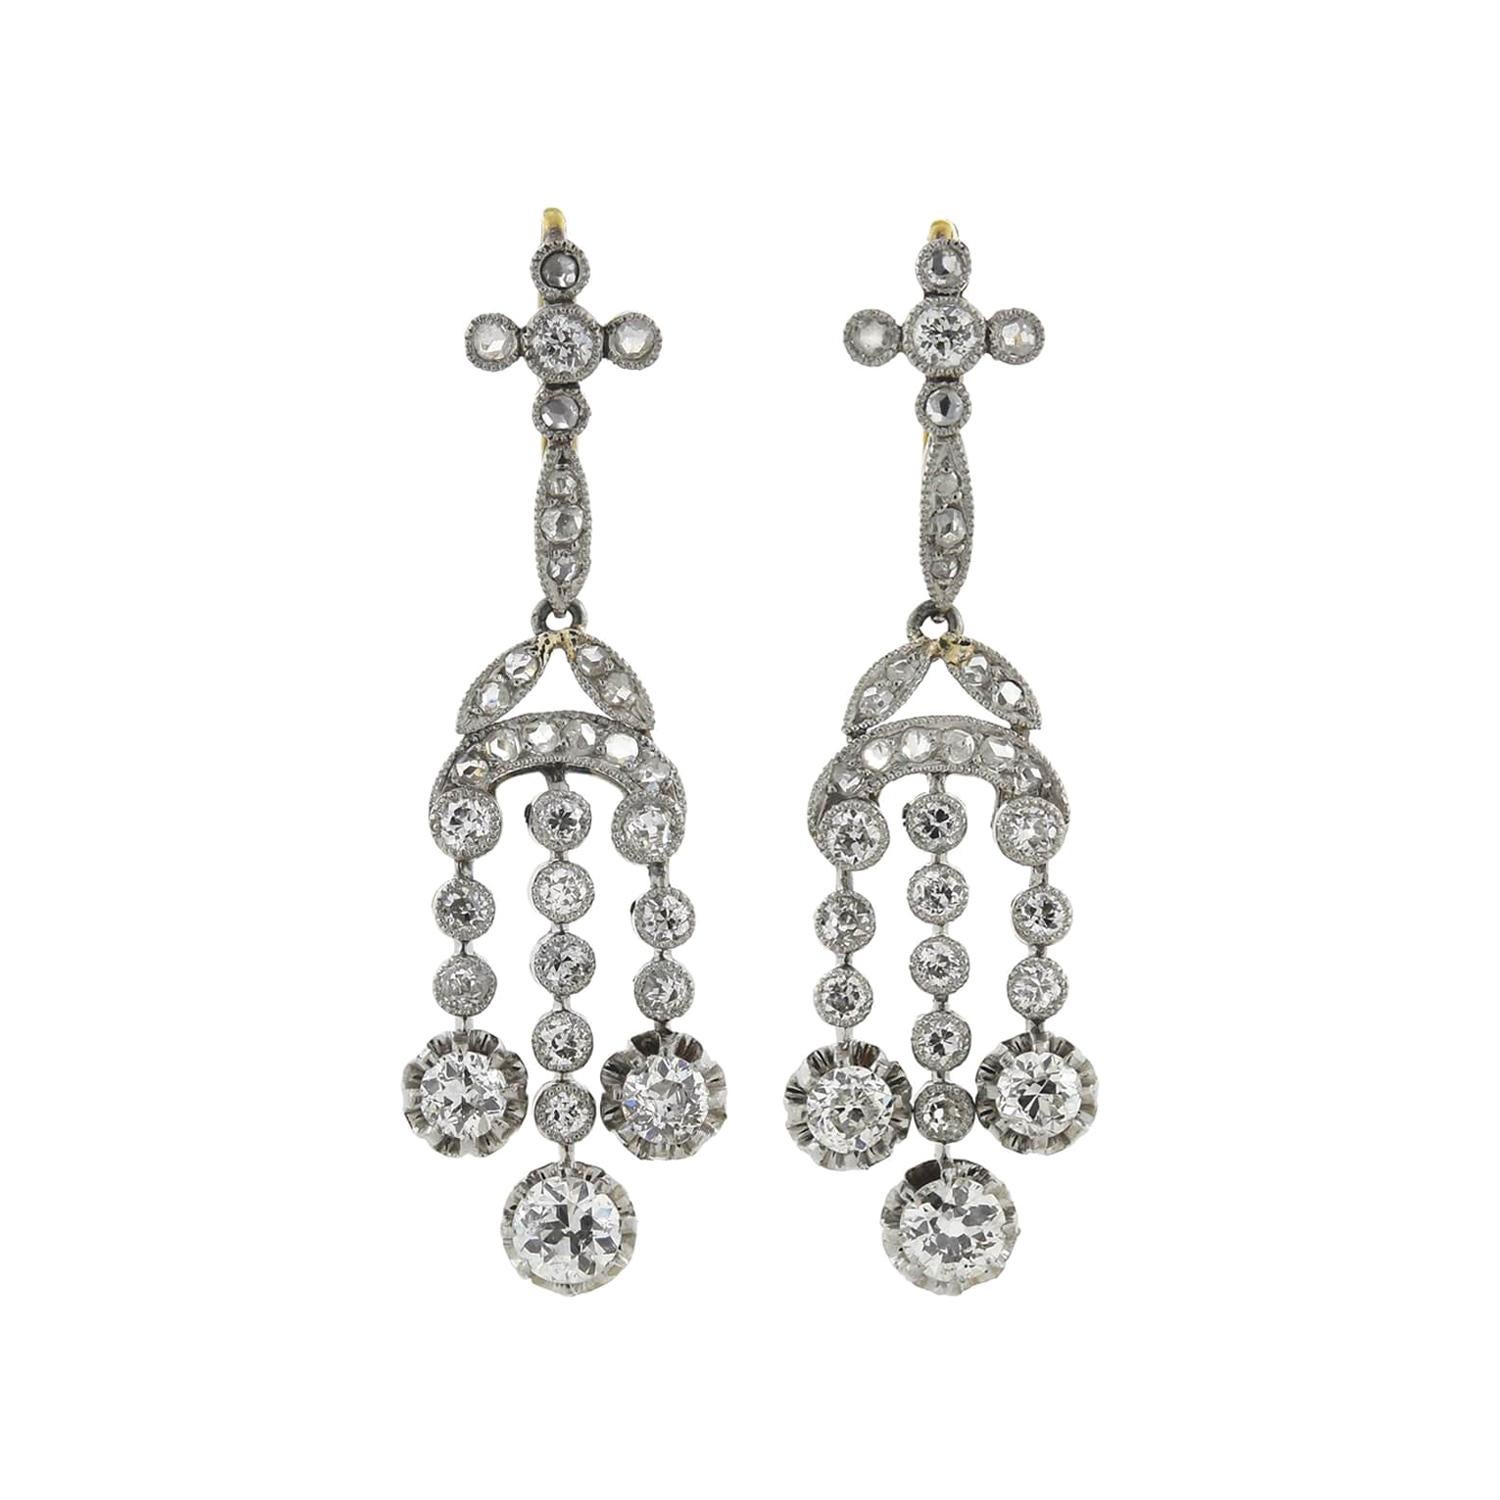 Edwardian 1.90 Total Carat Diamond Drop Earrings